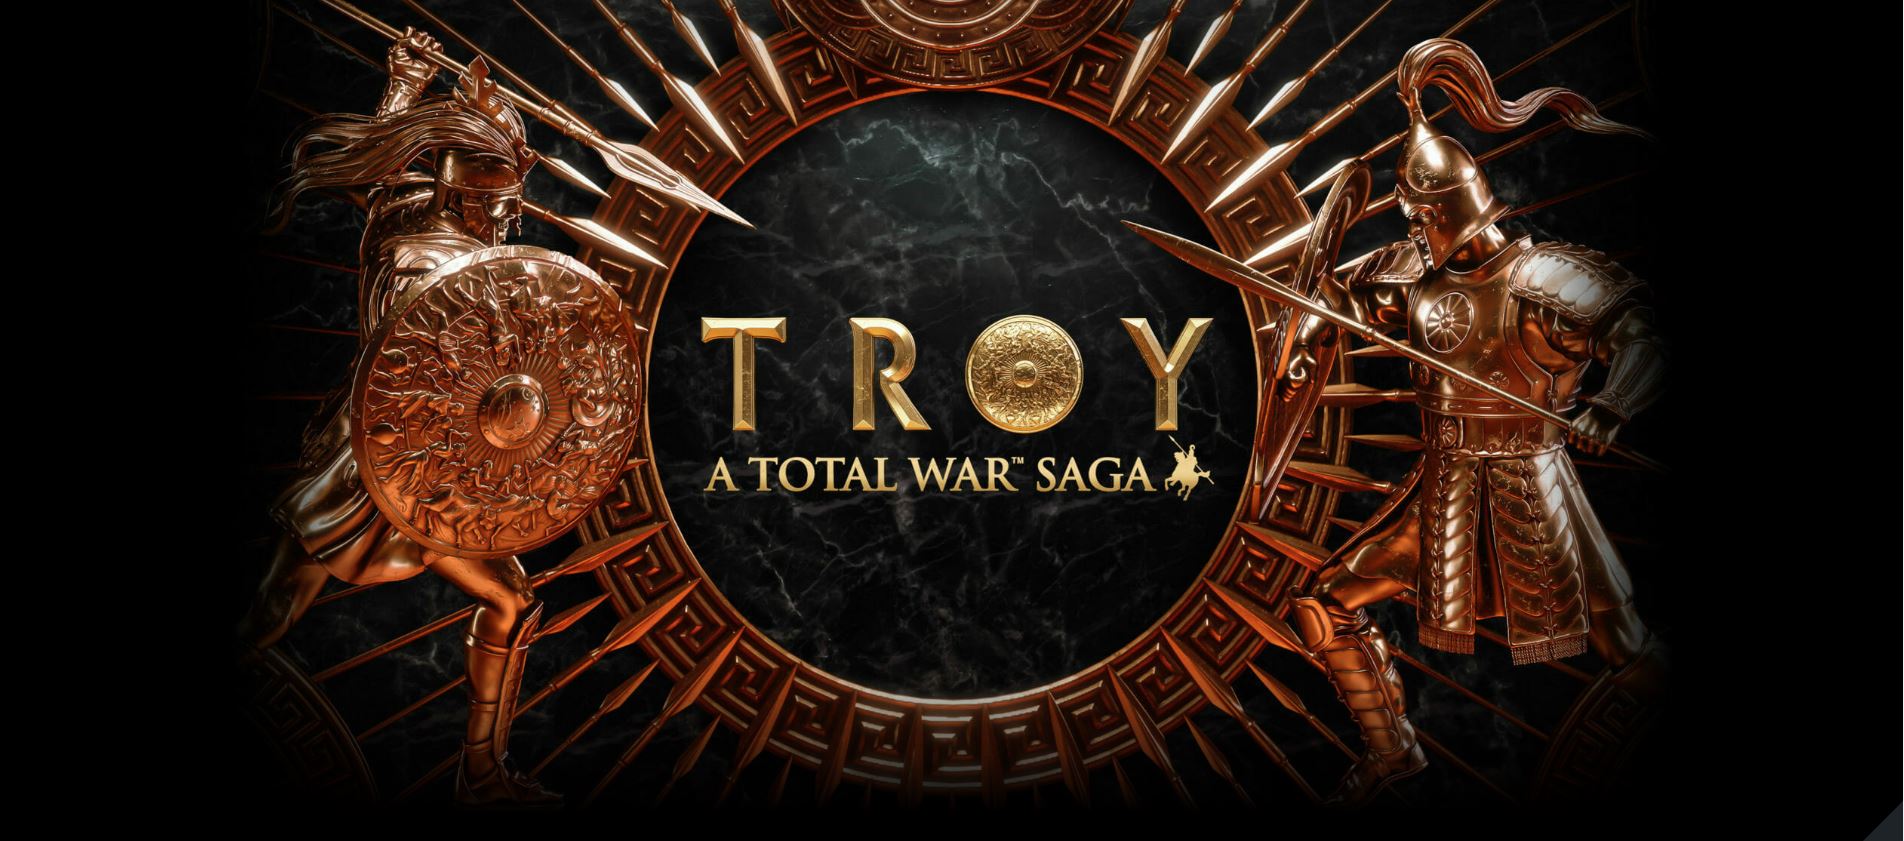 Sega har meddelat ett nytt totalt krig baserat i Troy